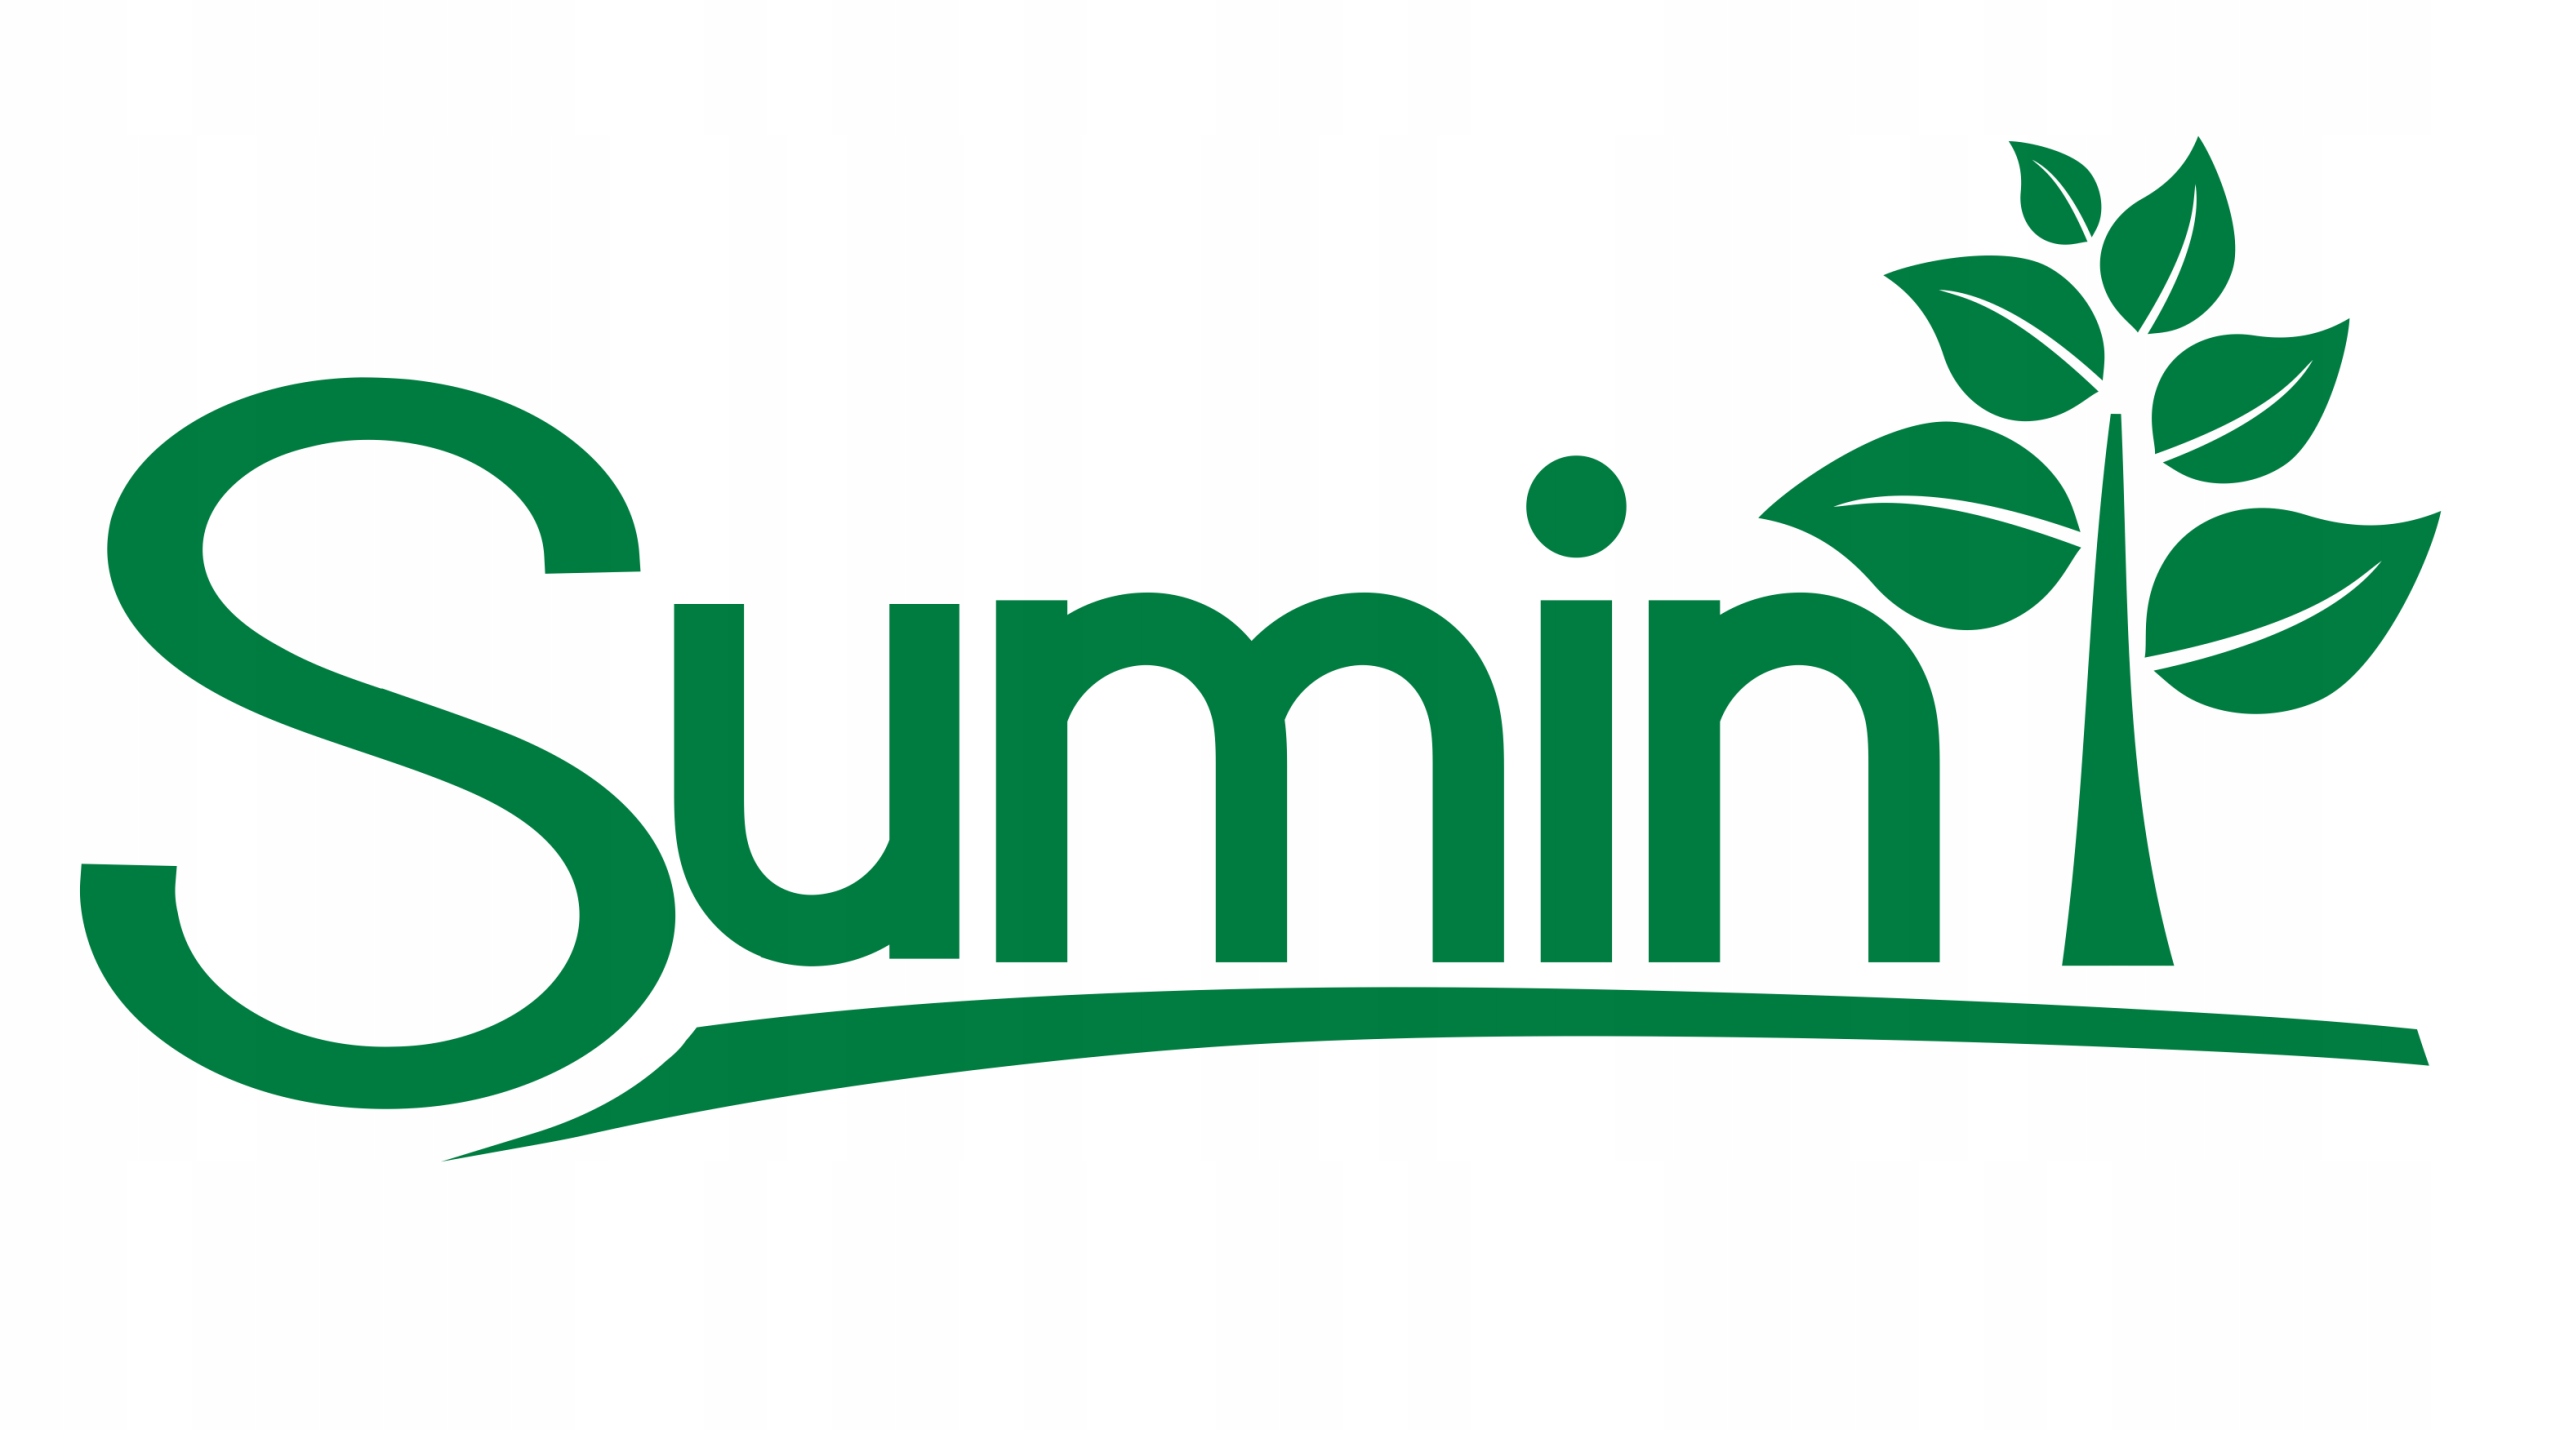 SUMIN FINISHER борется с водорослями мох печеночники 200 мл вес продукта с единичной упаковкой 0,275 кг